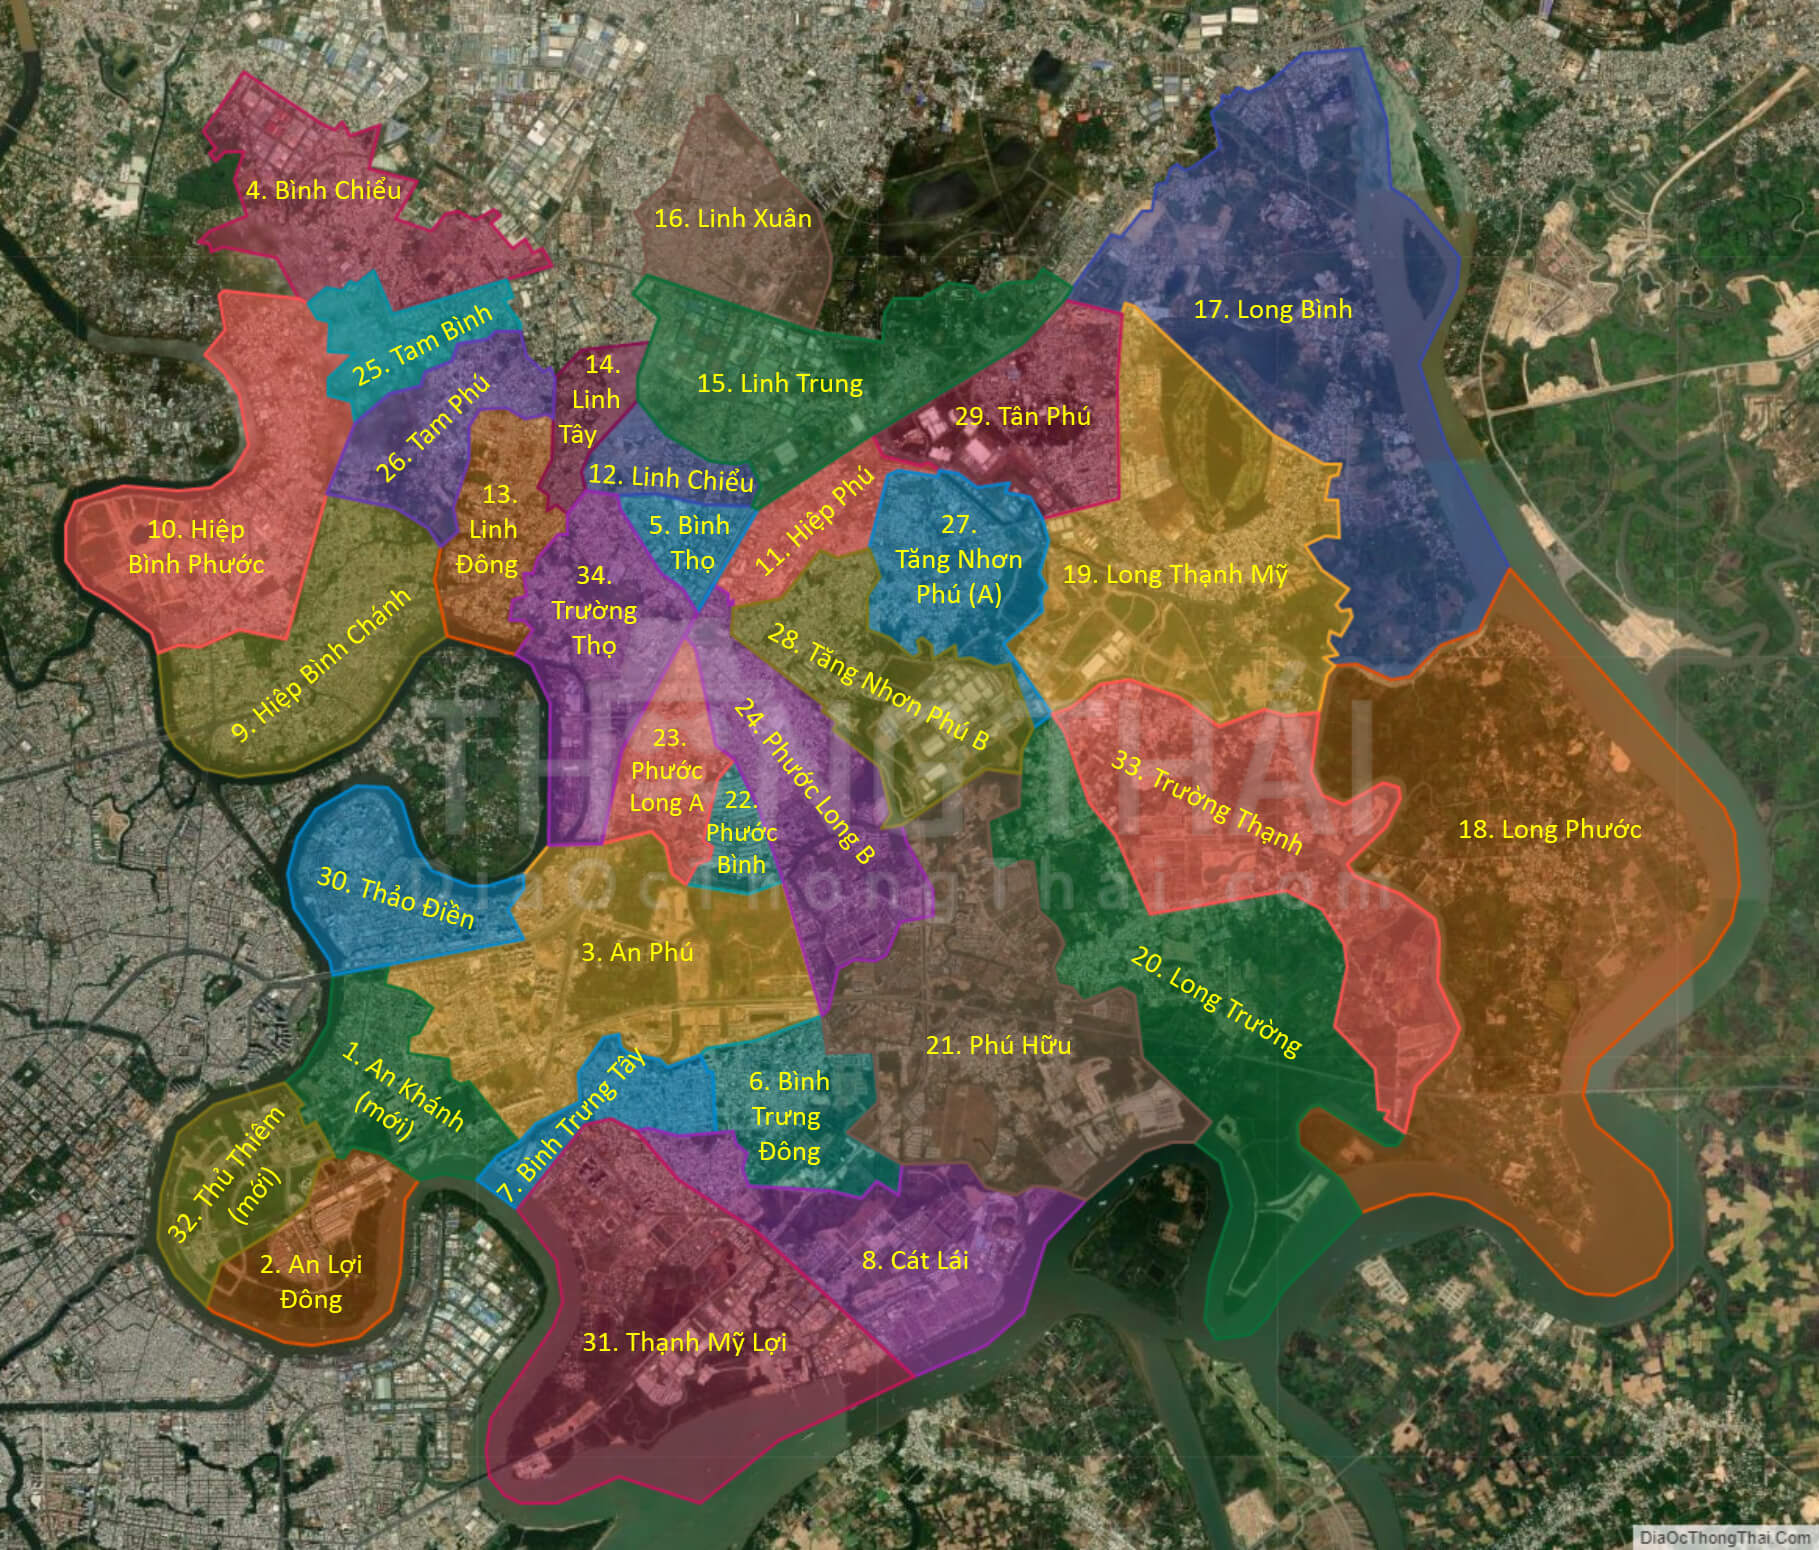 Bản đồ TP Thủ Đức 2024:
Với tầm nhìn phát triển bền vững và đổi mới liên tục, Thủ Đức sẽ trở thành thành phố thông minh, hiện đại nhất trong thập kỷ tới. Chúng tôi hân hạnh cung cấp bản đồ TP Thủ Đức 2024 để giúp các bạn dễ dàng hình dung về sự phát triển đầy tiềm năng của thành phố này.